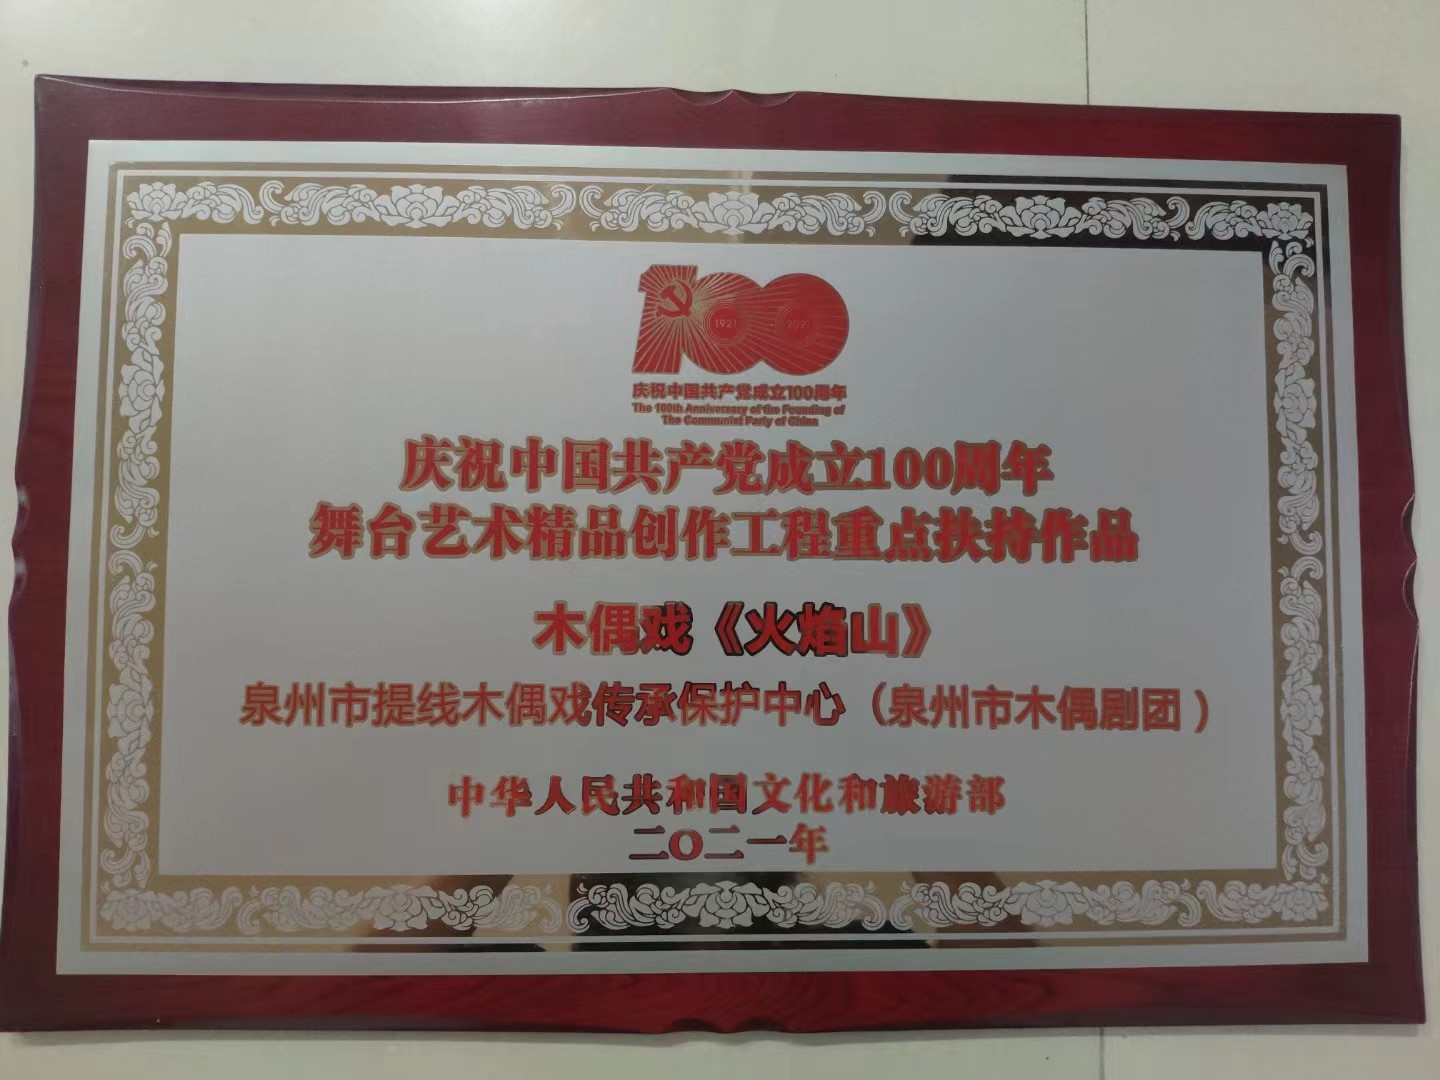 2021年庆祝中国共产党成立100周年重点扶持作品《火焰山》